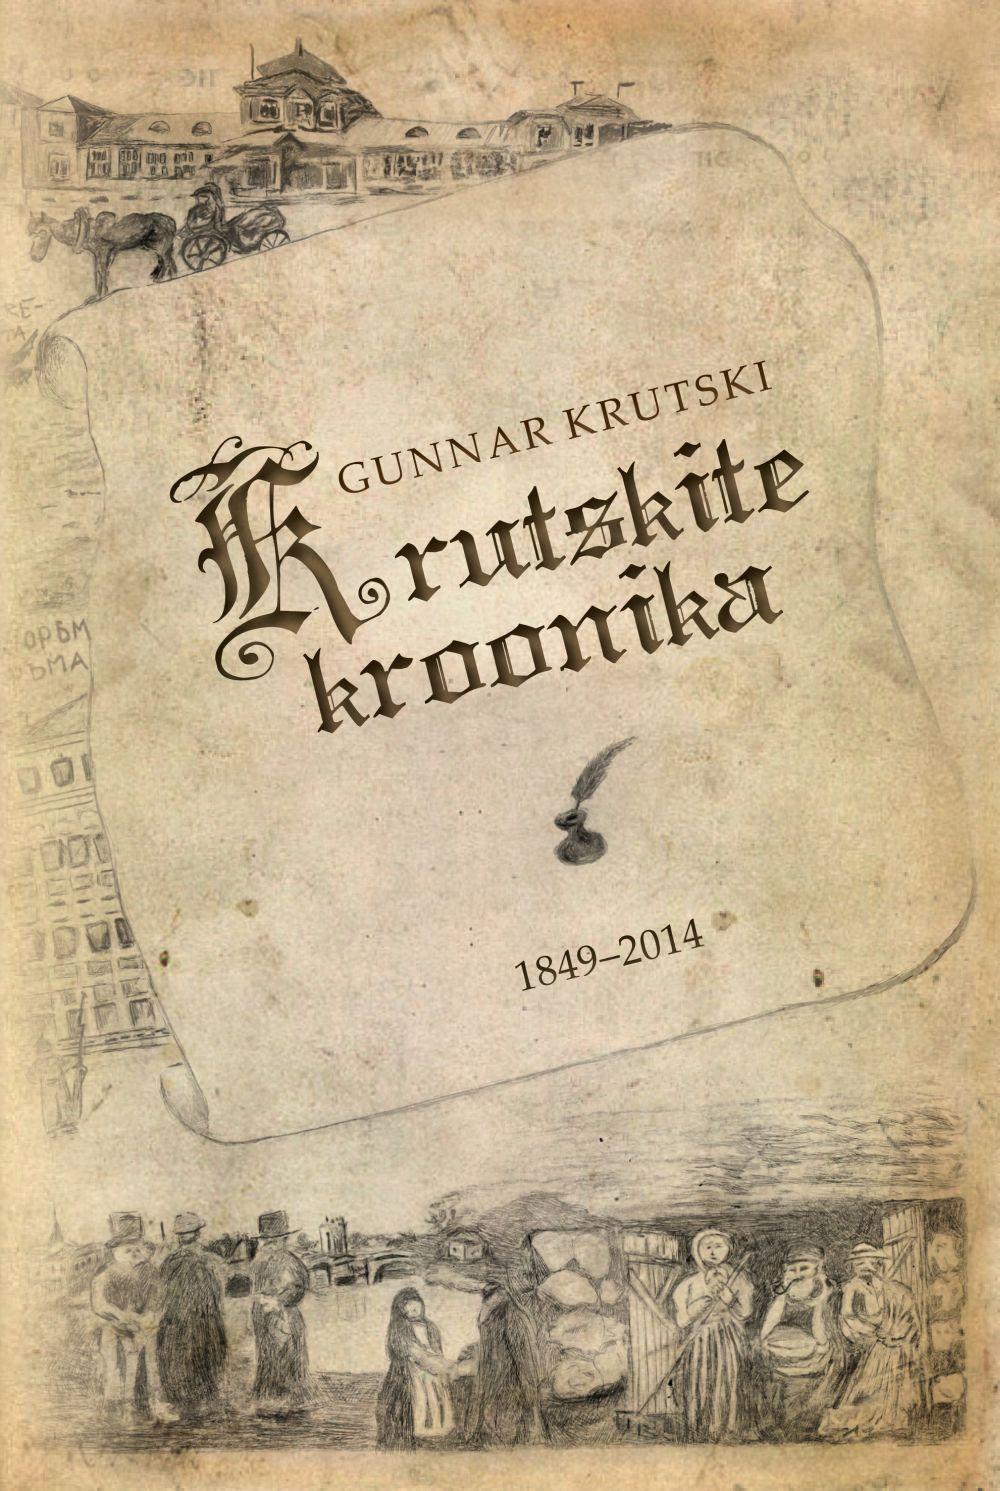 KRUTSKITE KROONIKA 1949-2014